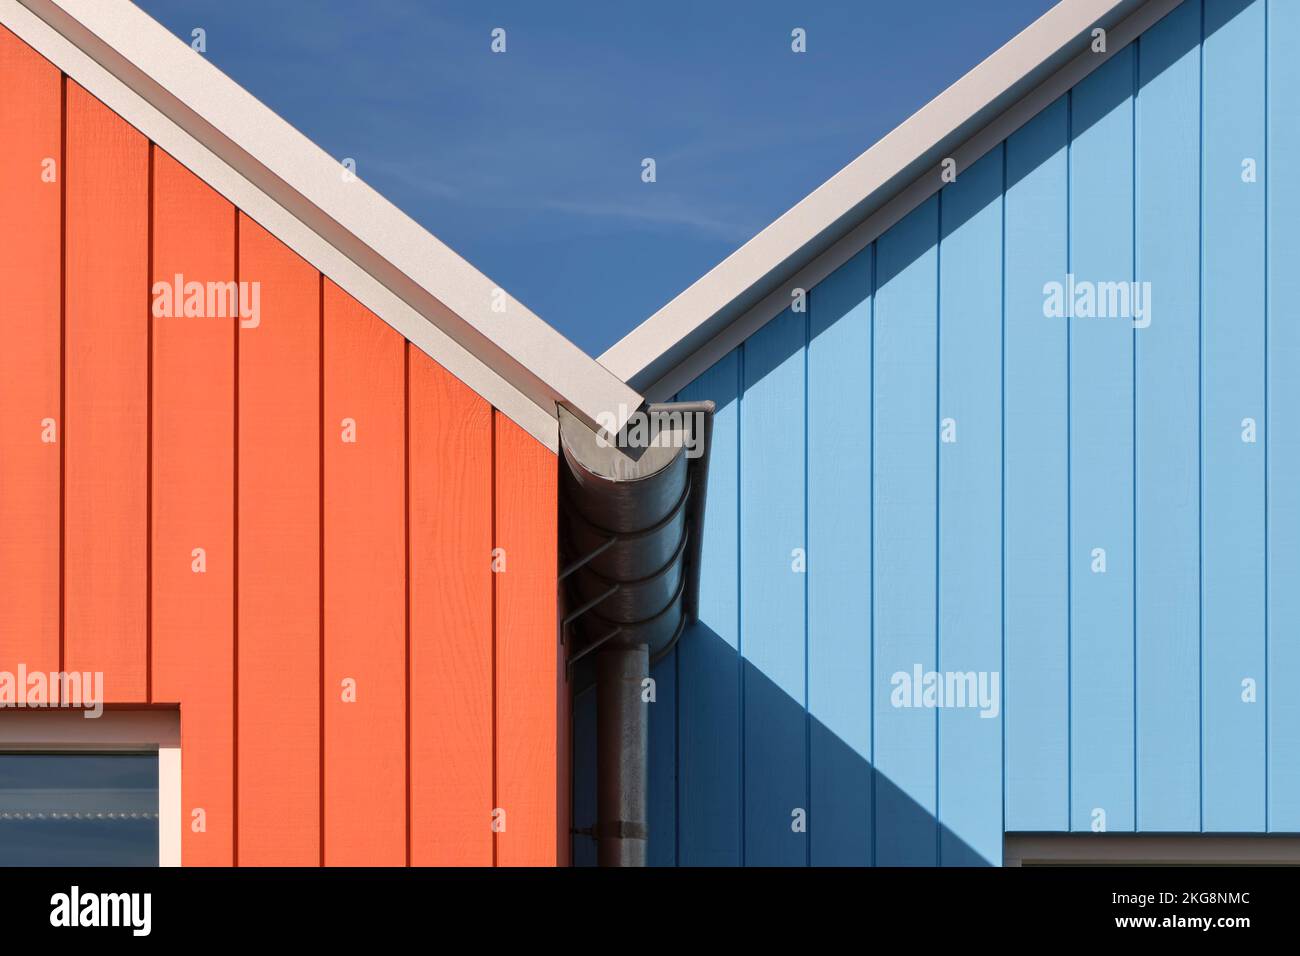 Detailfoto des bemalten Holzes einiger skandinavischer Gebäude in Lauwersoog, Niederlande. Abstraktes geometrisches Bild in Orange und Blau Stockfoto